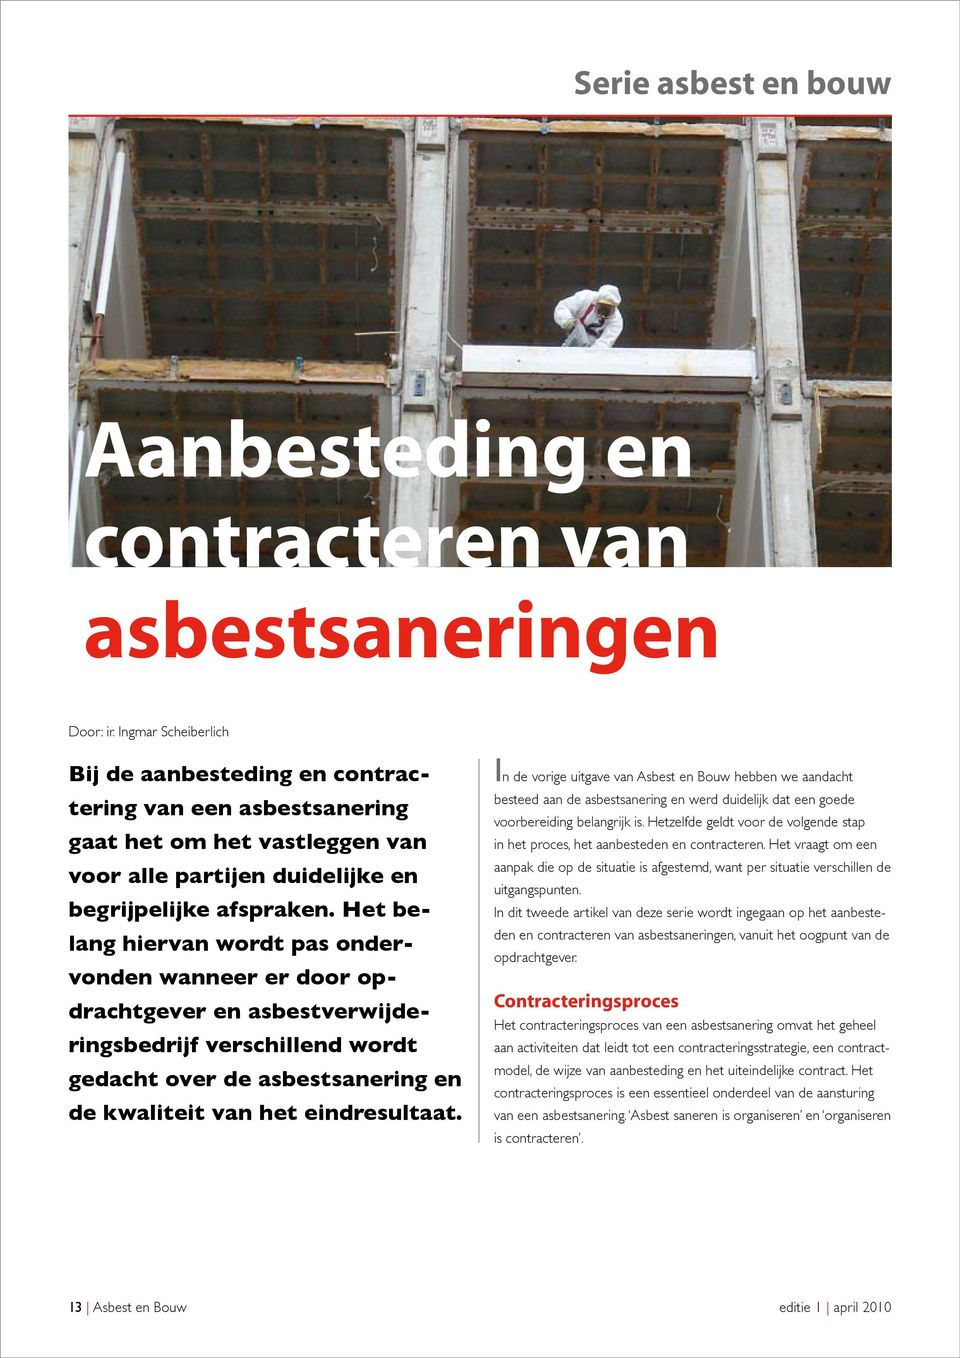 Het belang hiervan wordt pas ondervonden wanneer er door opdrachtgever en asbestverwijderingsbedrijf verschillend wordt gedacht over de asbestsanering en de kwaliteit van het eindresultaat.